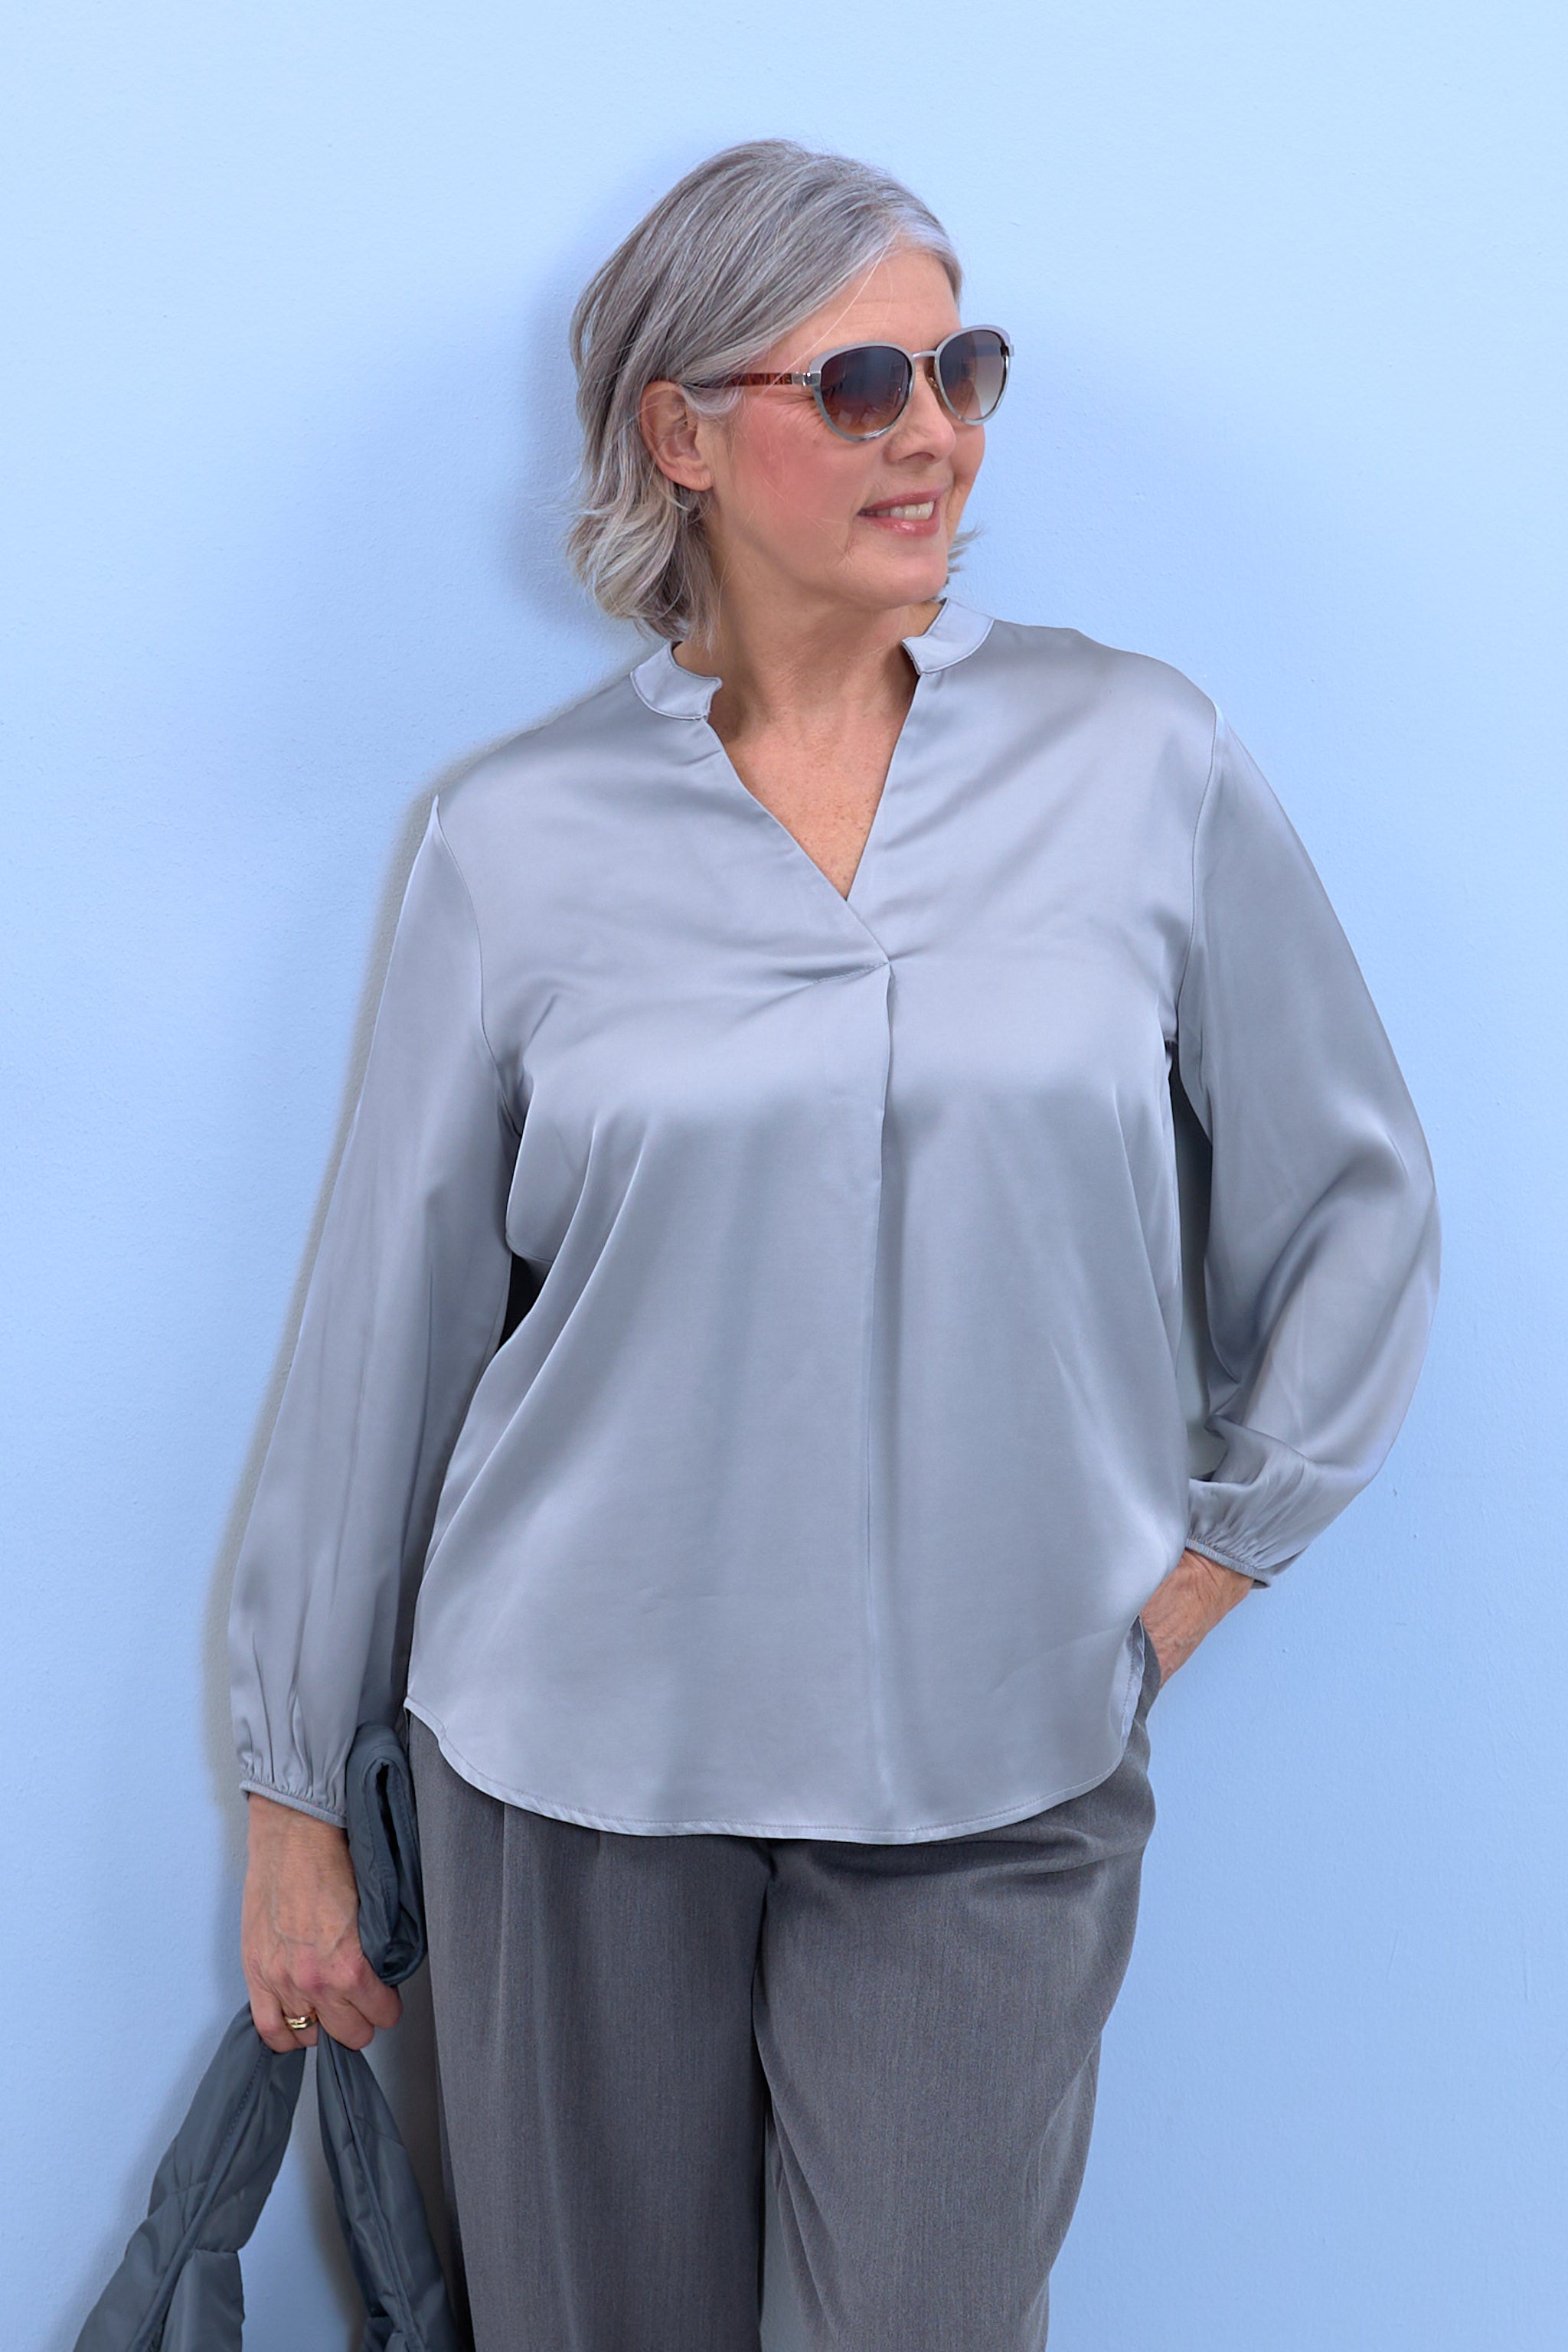 Bluse aus Glanzstoff mit V-Ausschnitt, silber-grau